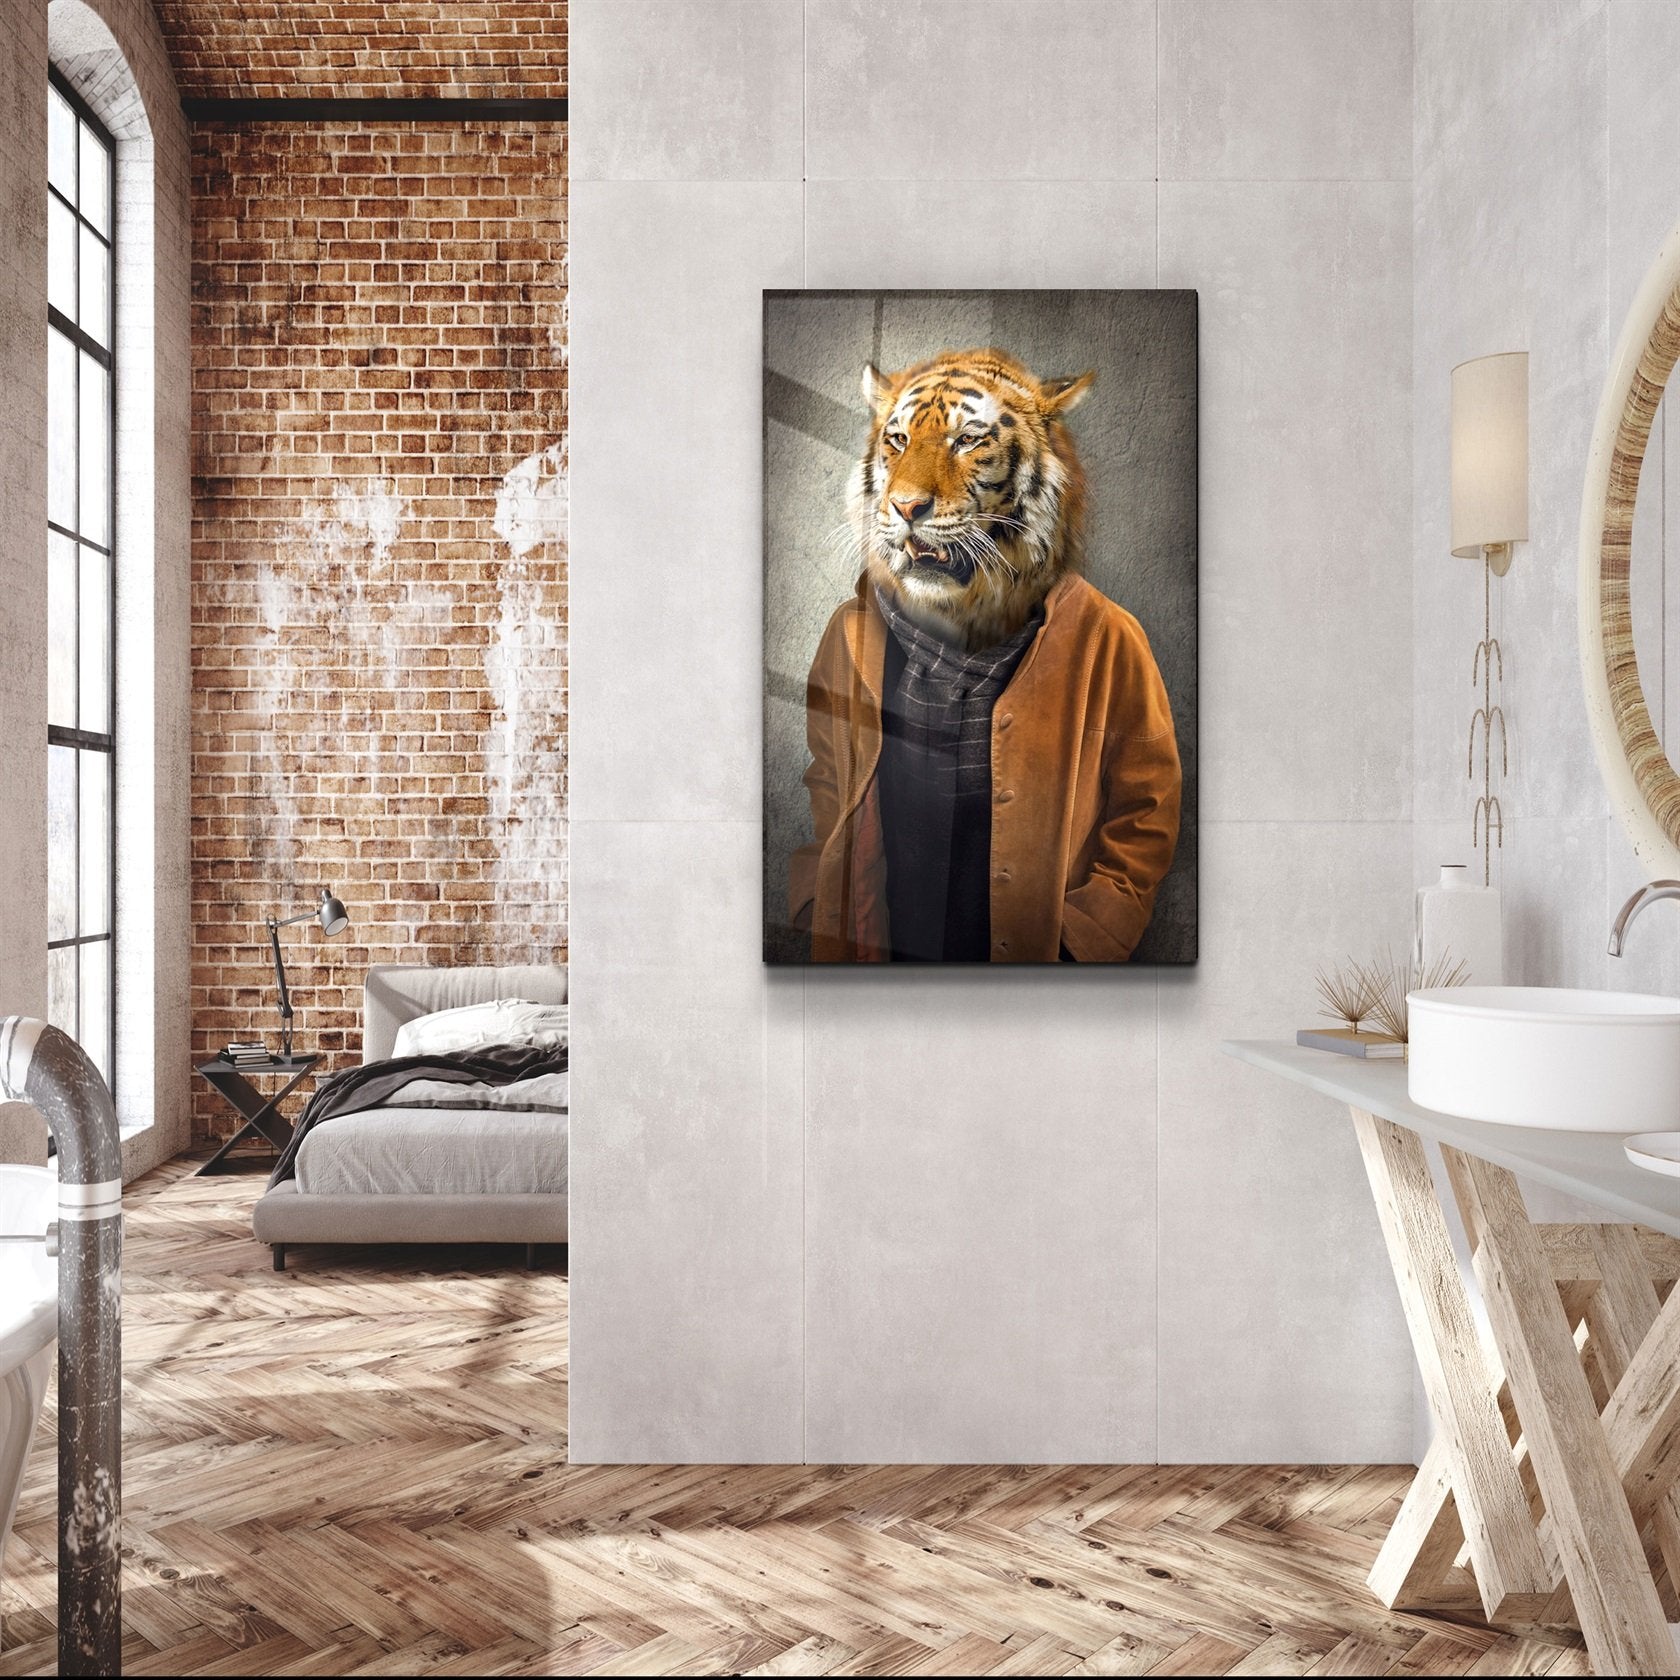 ・"Tiger Head"・Glass Wall Art